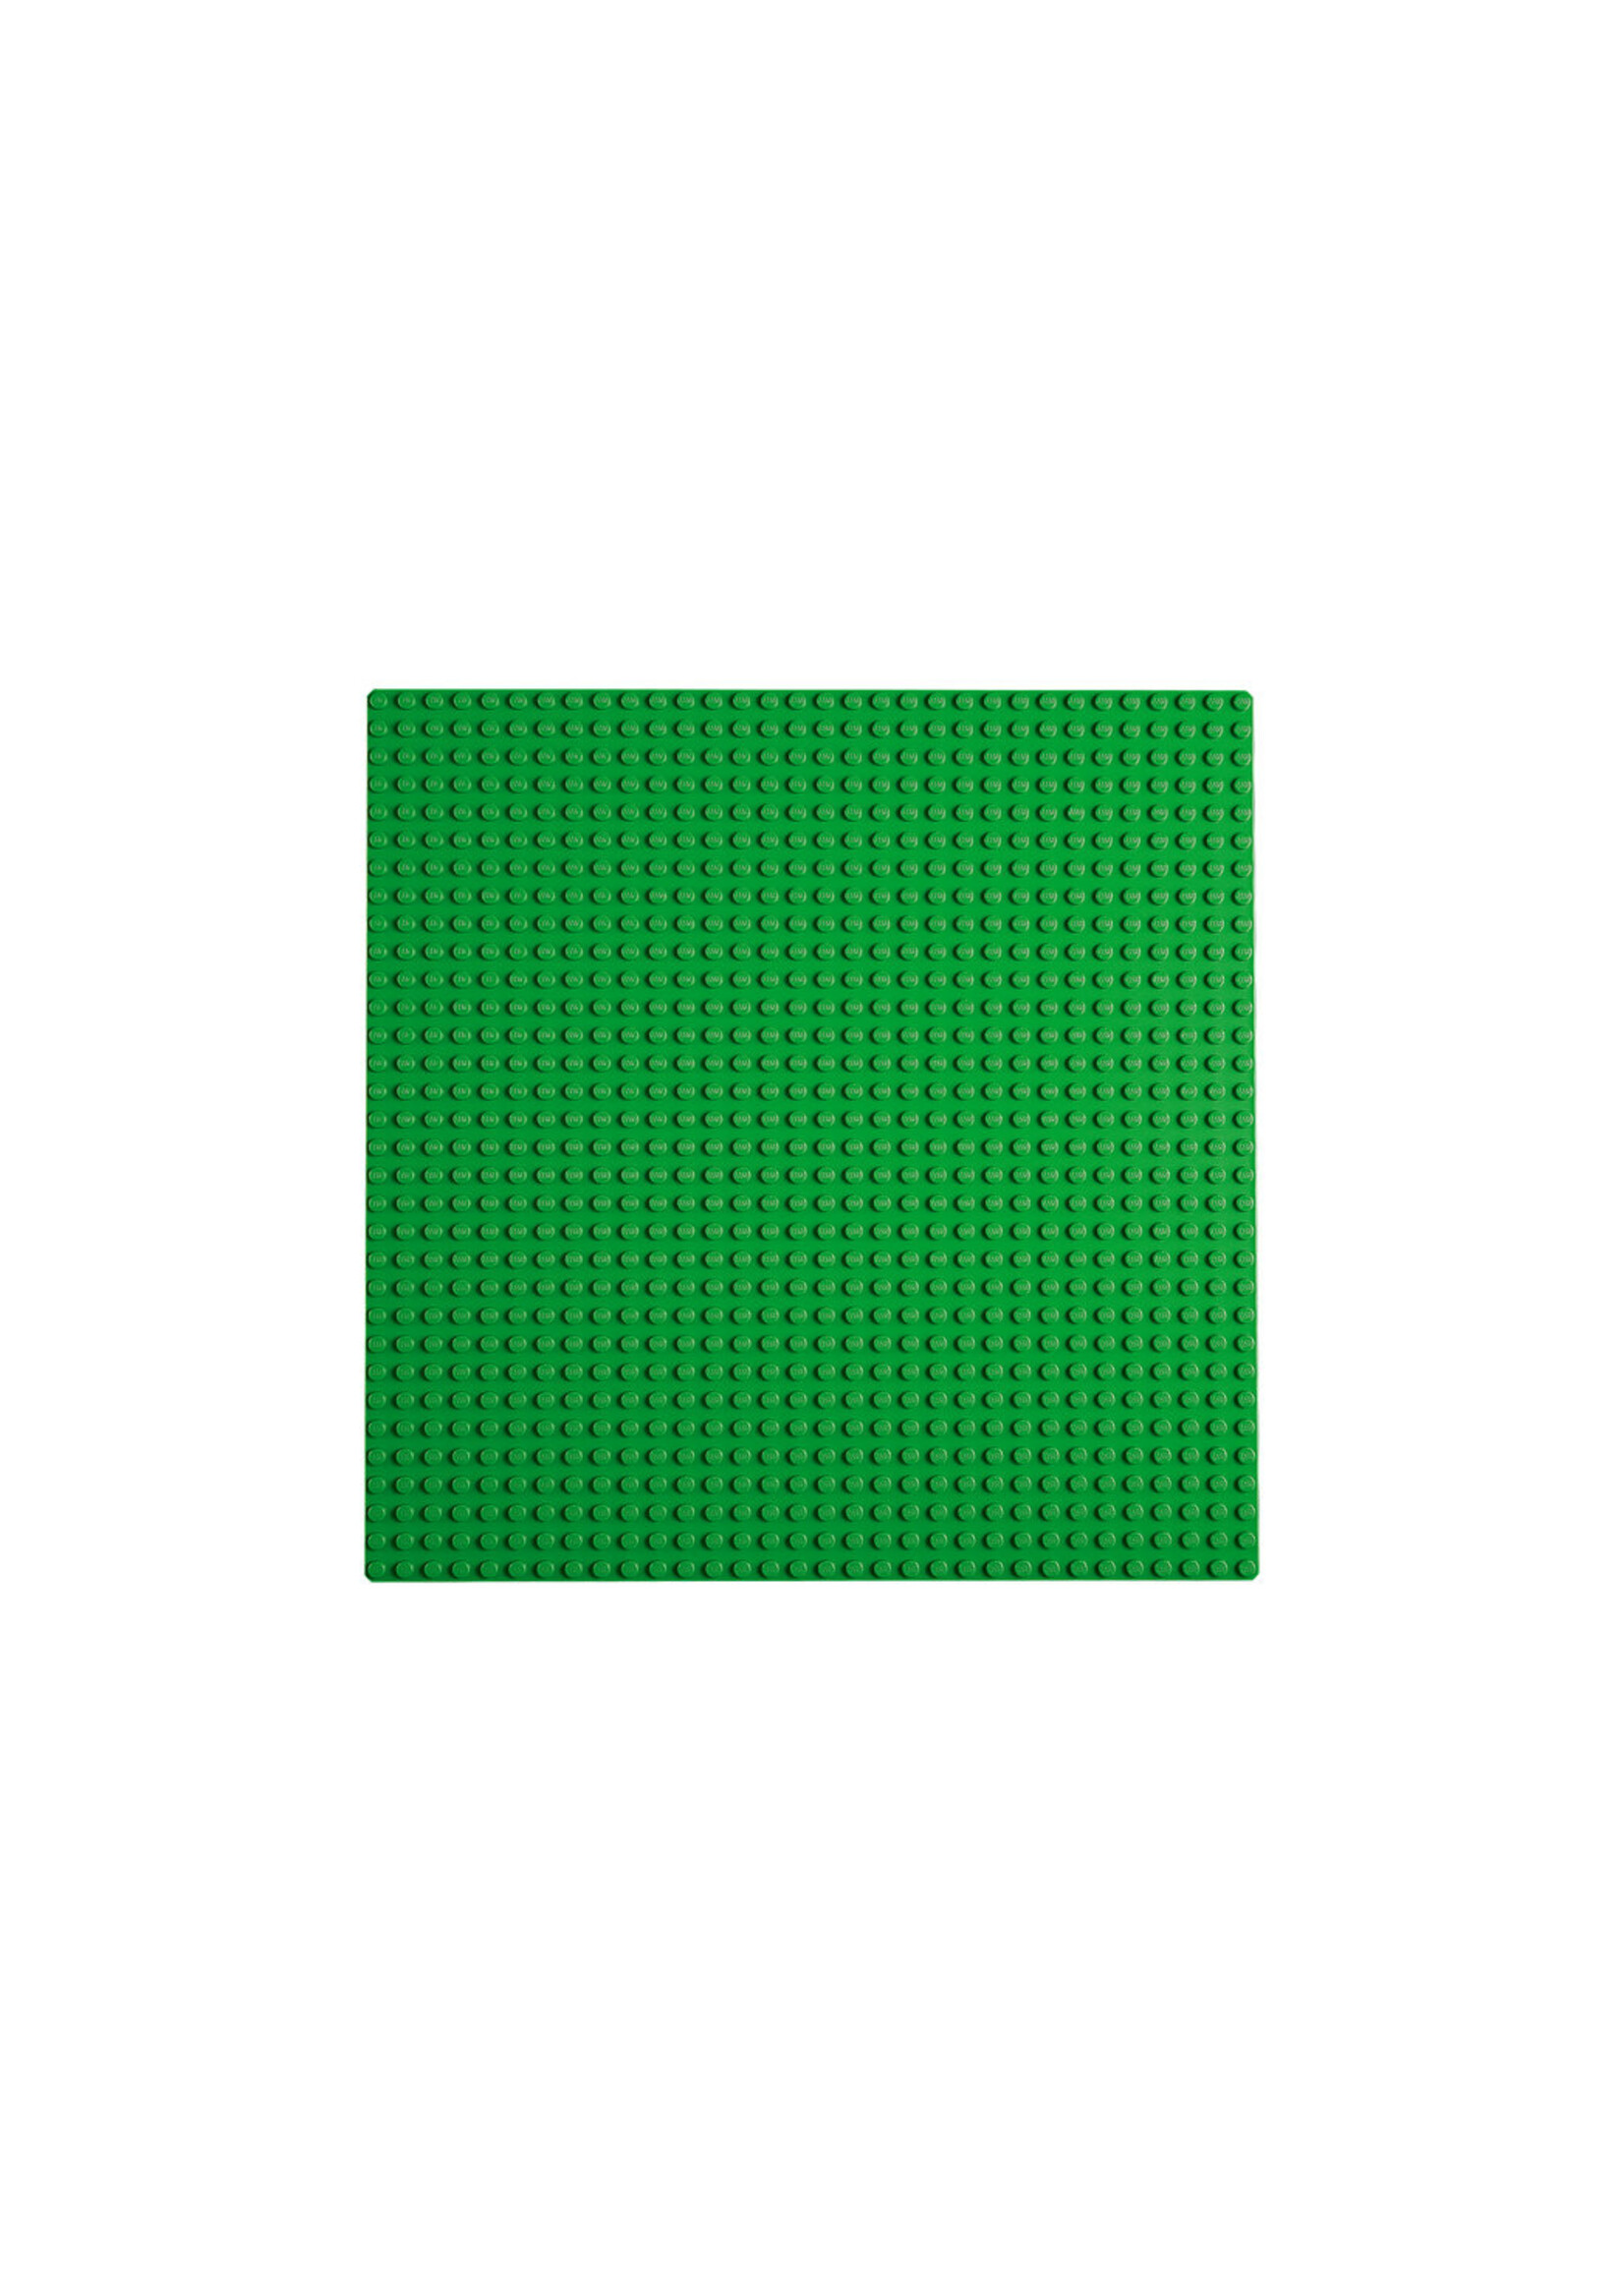 LEGO 11023 - Green Baseplate